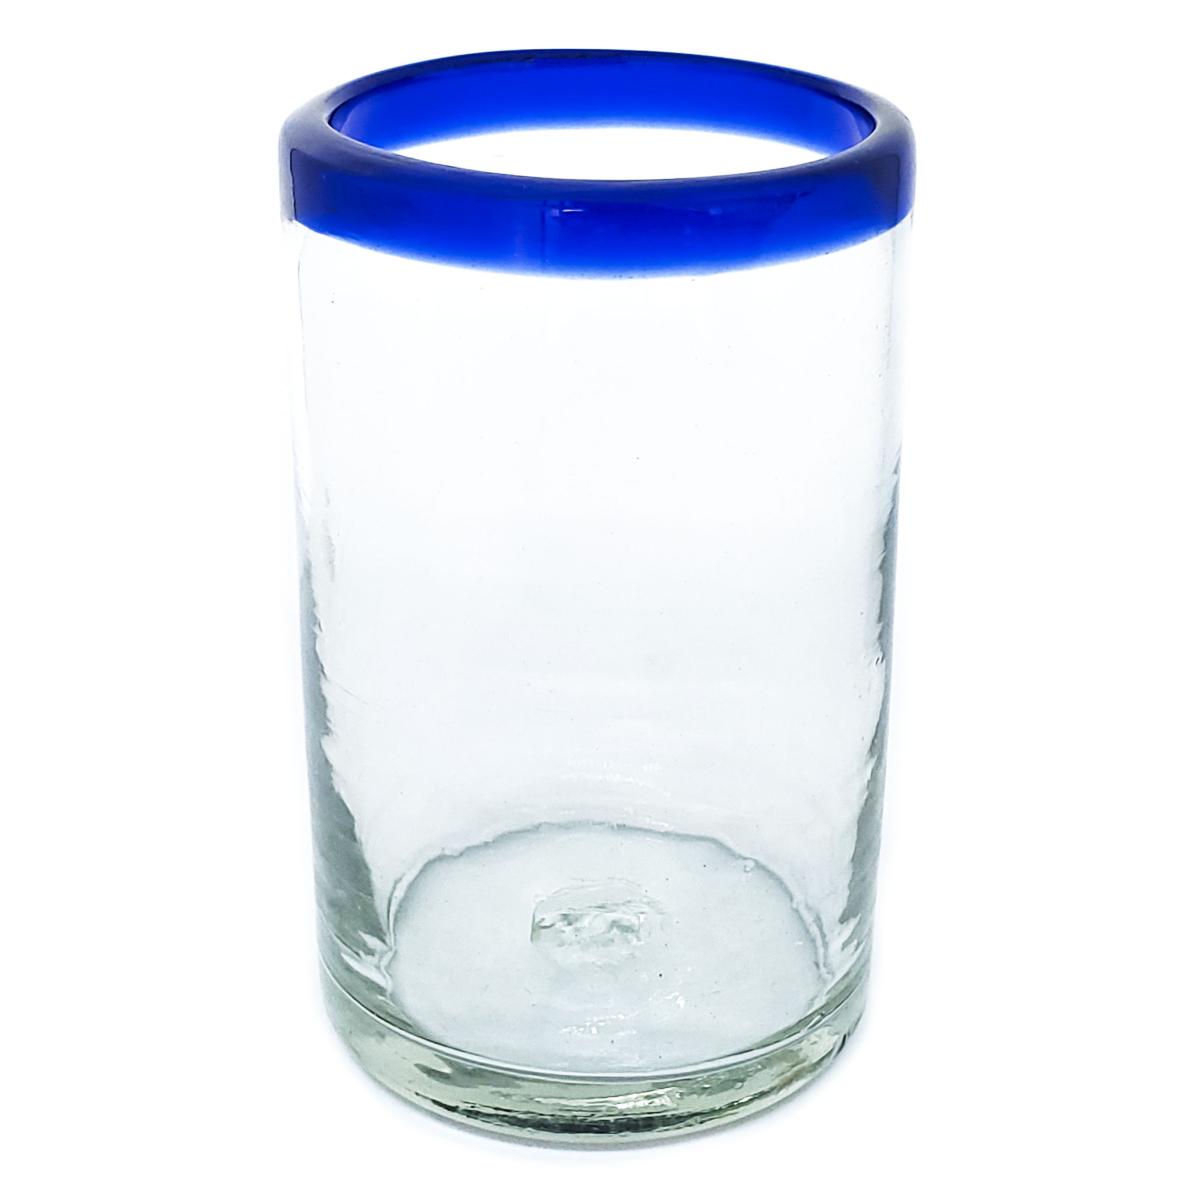 Borde de Color al Mayoreo / vasos grandes con borde azul cobalto / stos artesanales vasos le darn un toque clsico a su bebida favorita.